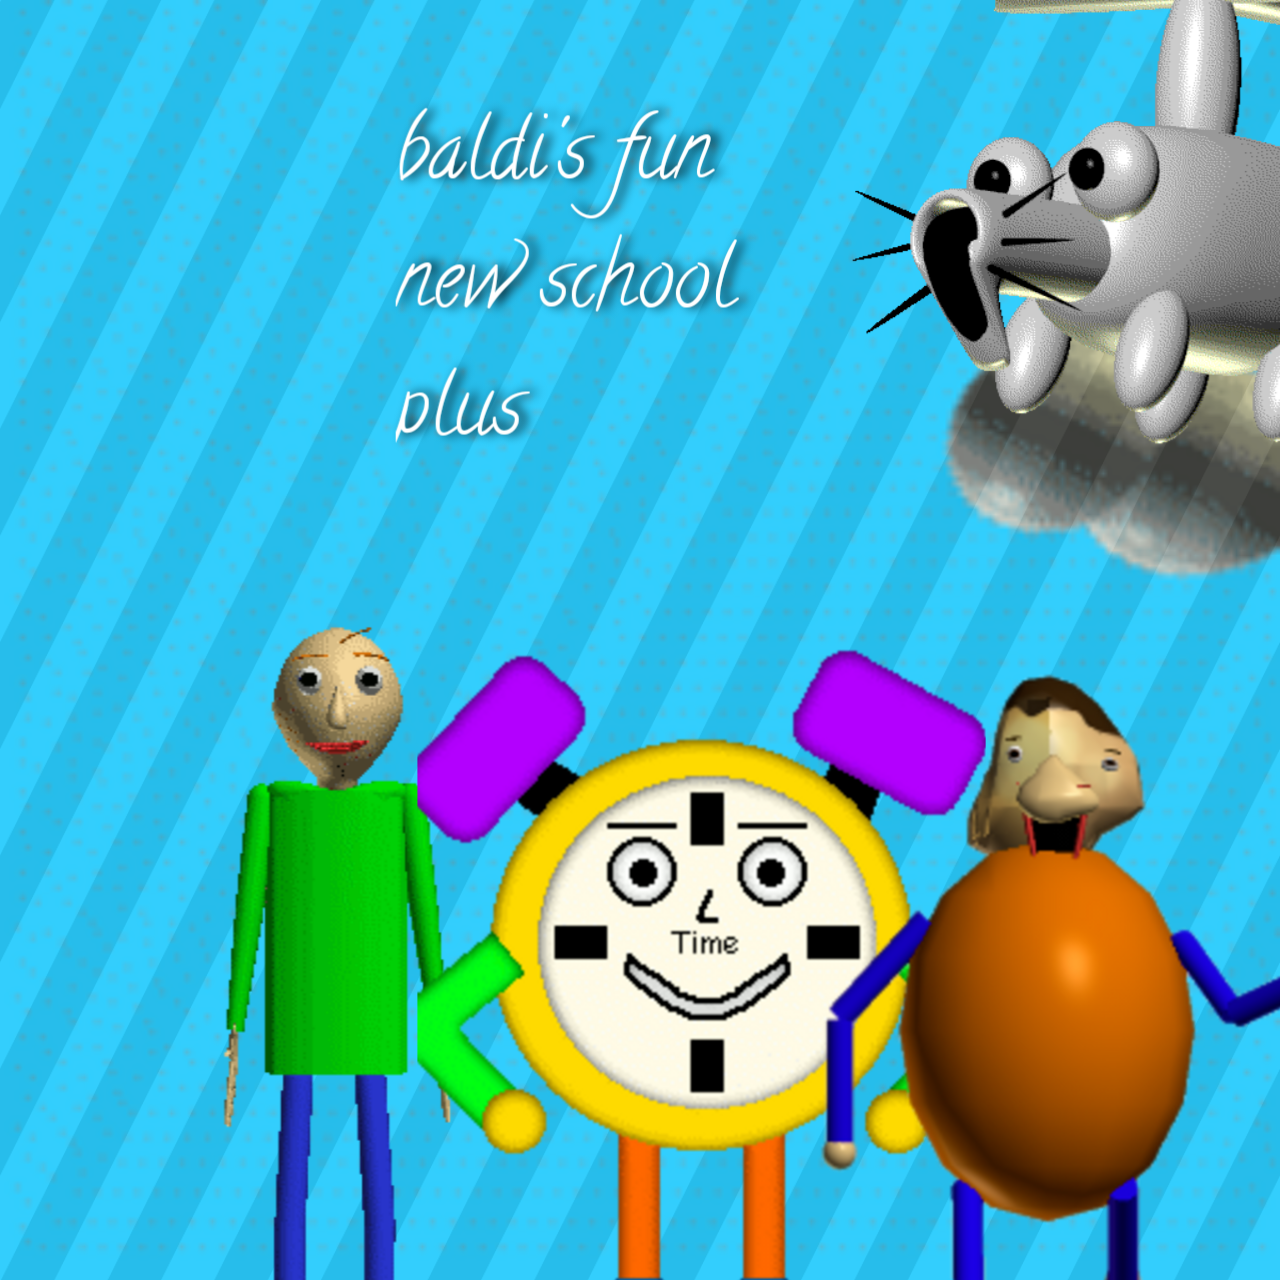 Baldi's Fun New School Remastered 1.4.4 Update Gameplay 